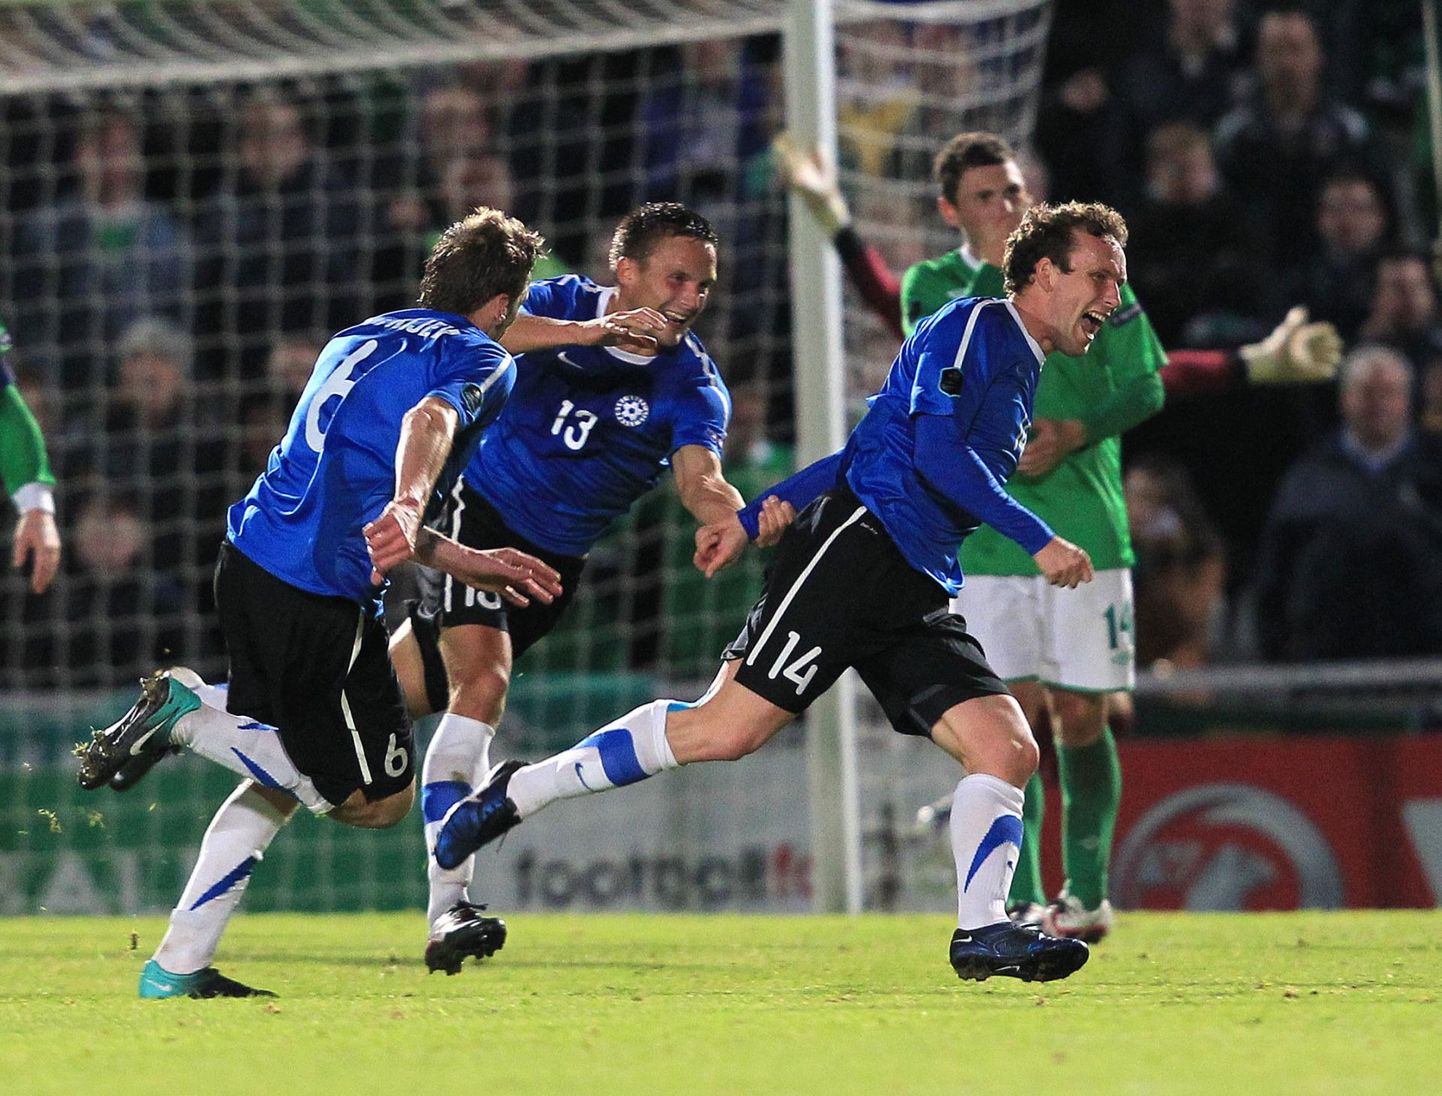 Oktoobris 2011 Belfastis Eestit joovastanud Konstanin Vassiljev (paremal) on endiselt rivis, tema kälimees Aleksandr Dmitrijev ja Martin Vunk mängijakarjääri aga lõpetanud. 